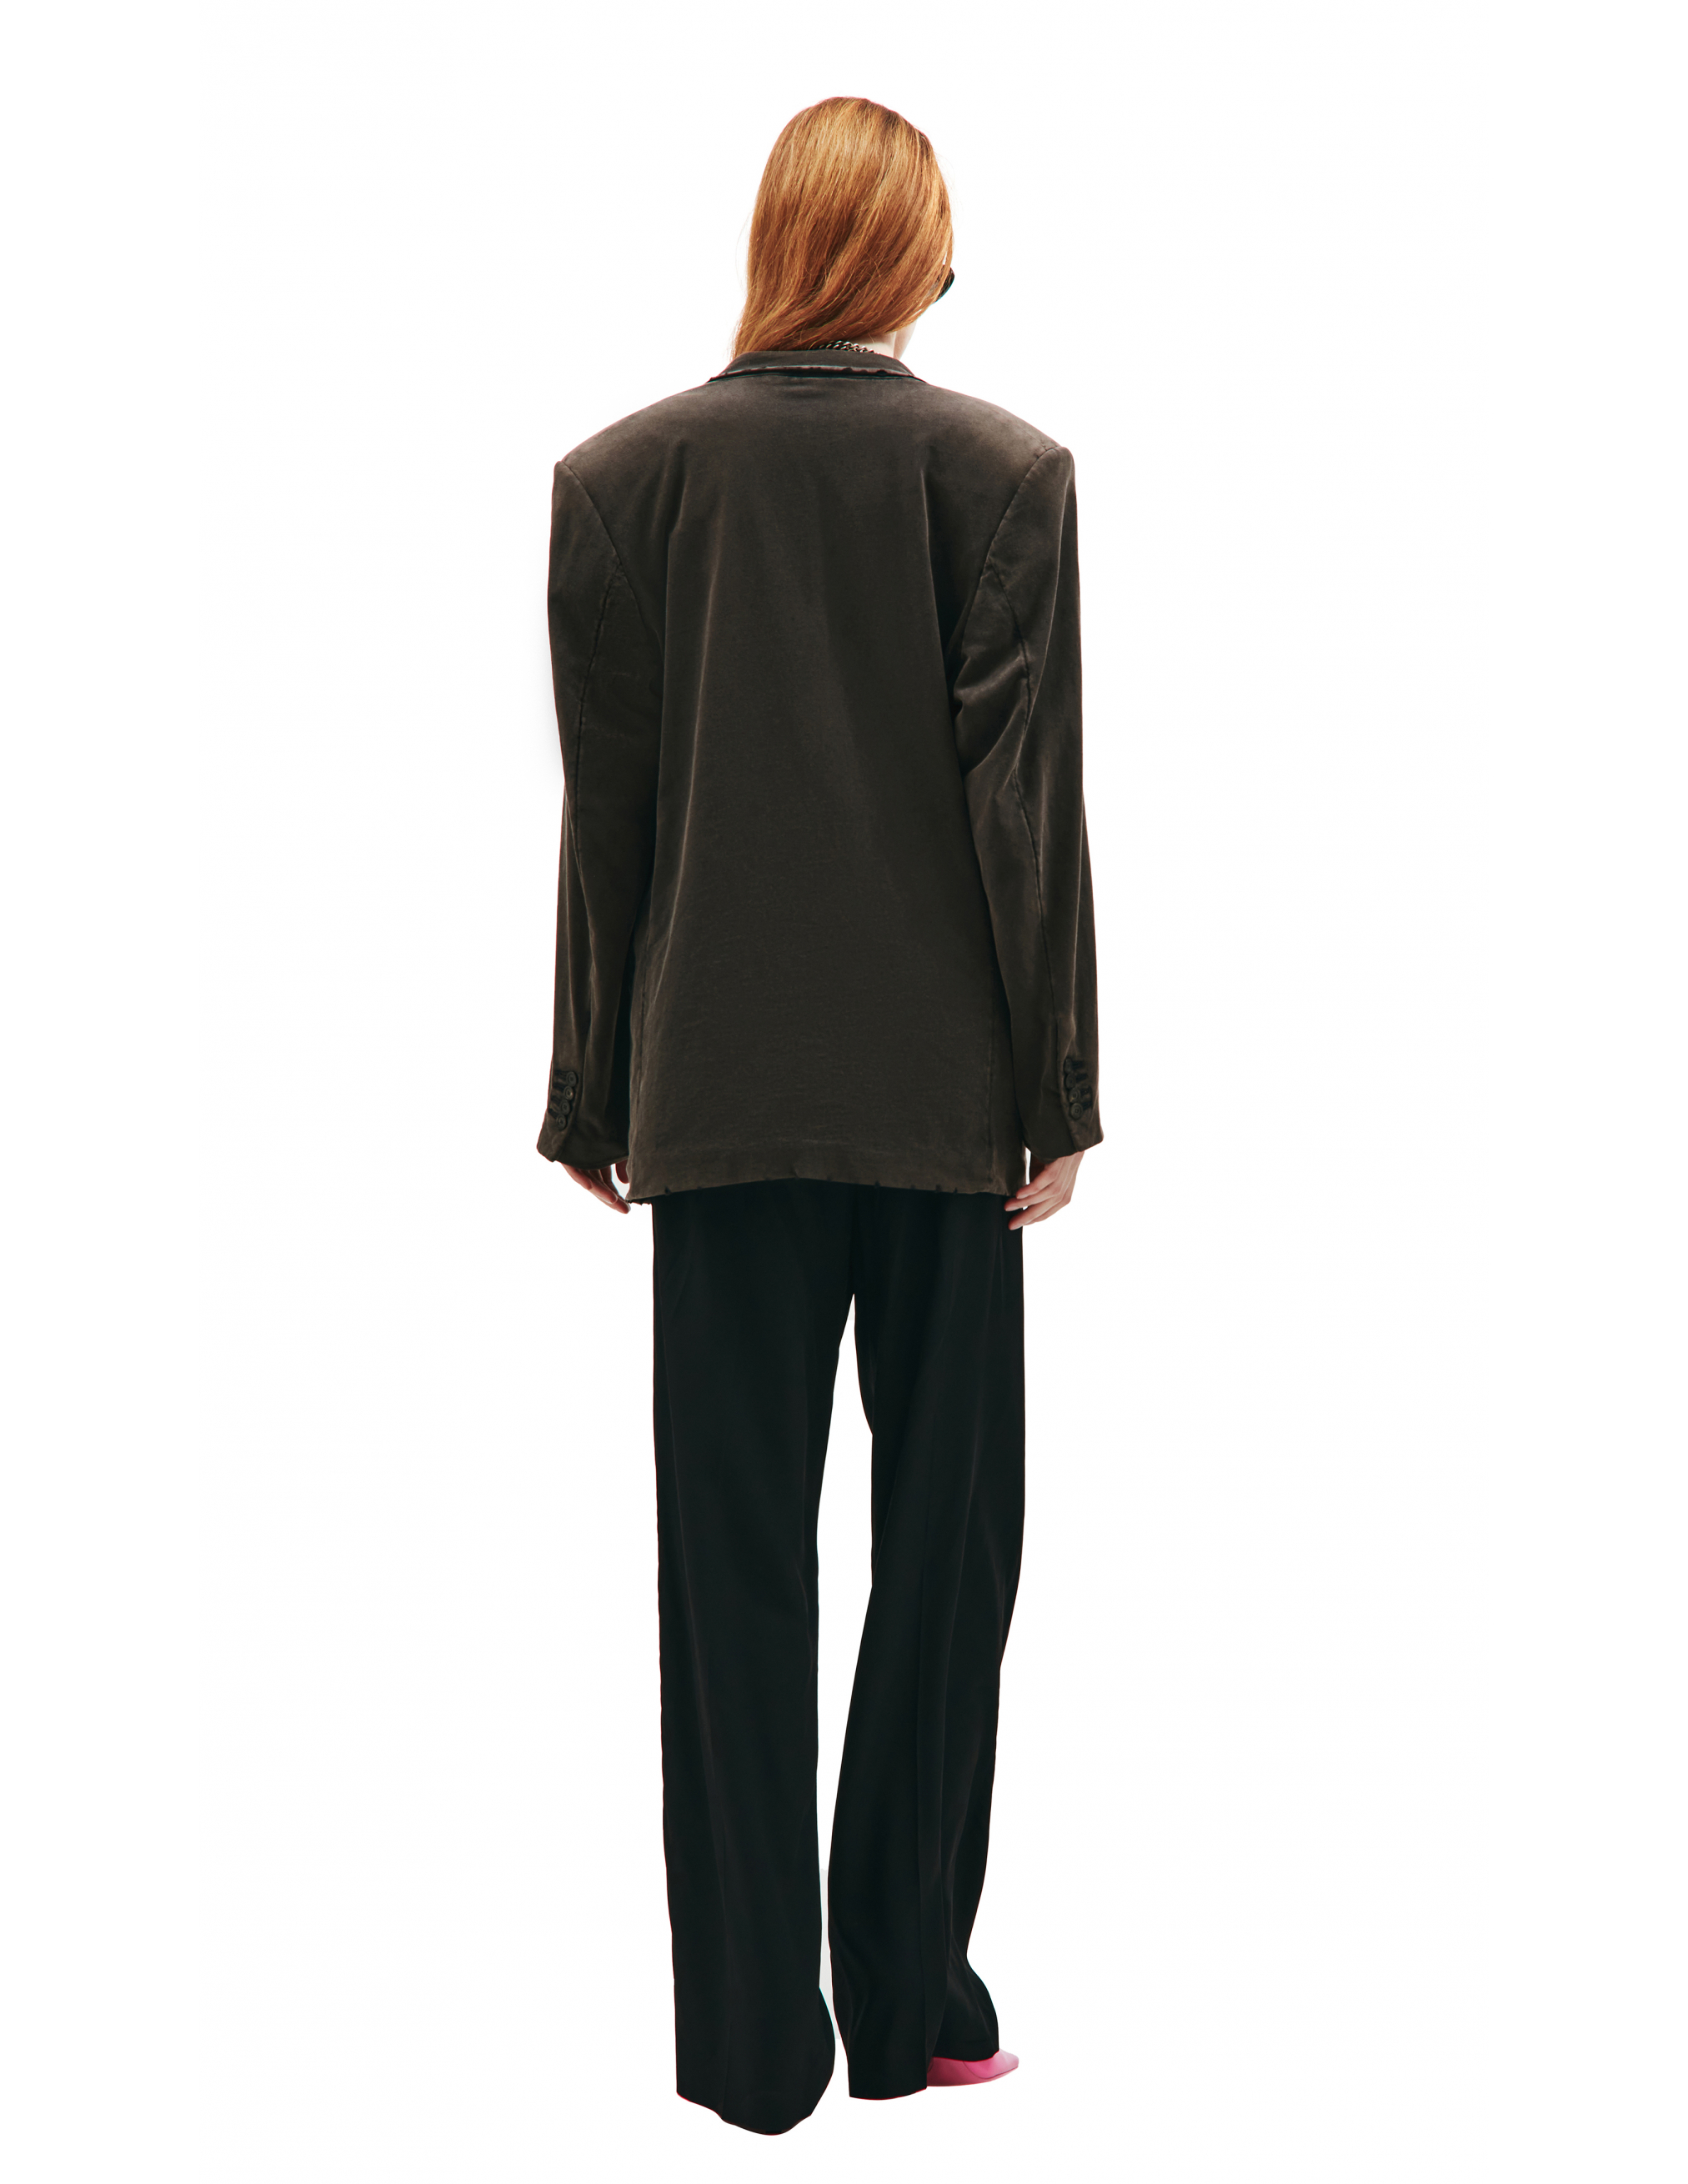 Двубортный пиджак с выстиранным эффектом Balenciaga 662390/TAV04/1000, размер M 662390/TAV04/1000 - фото 4